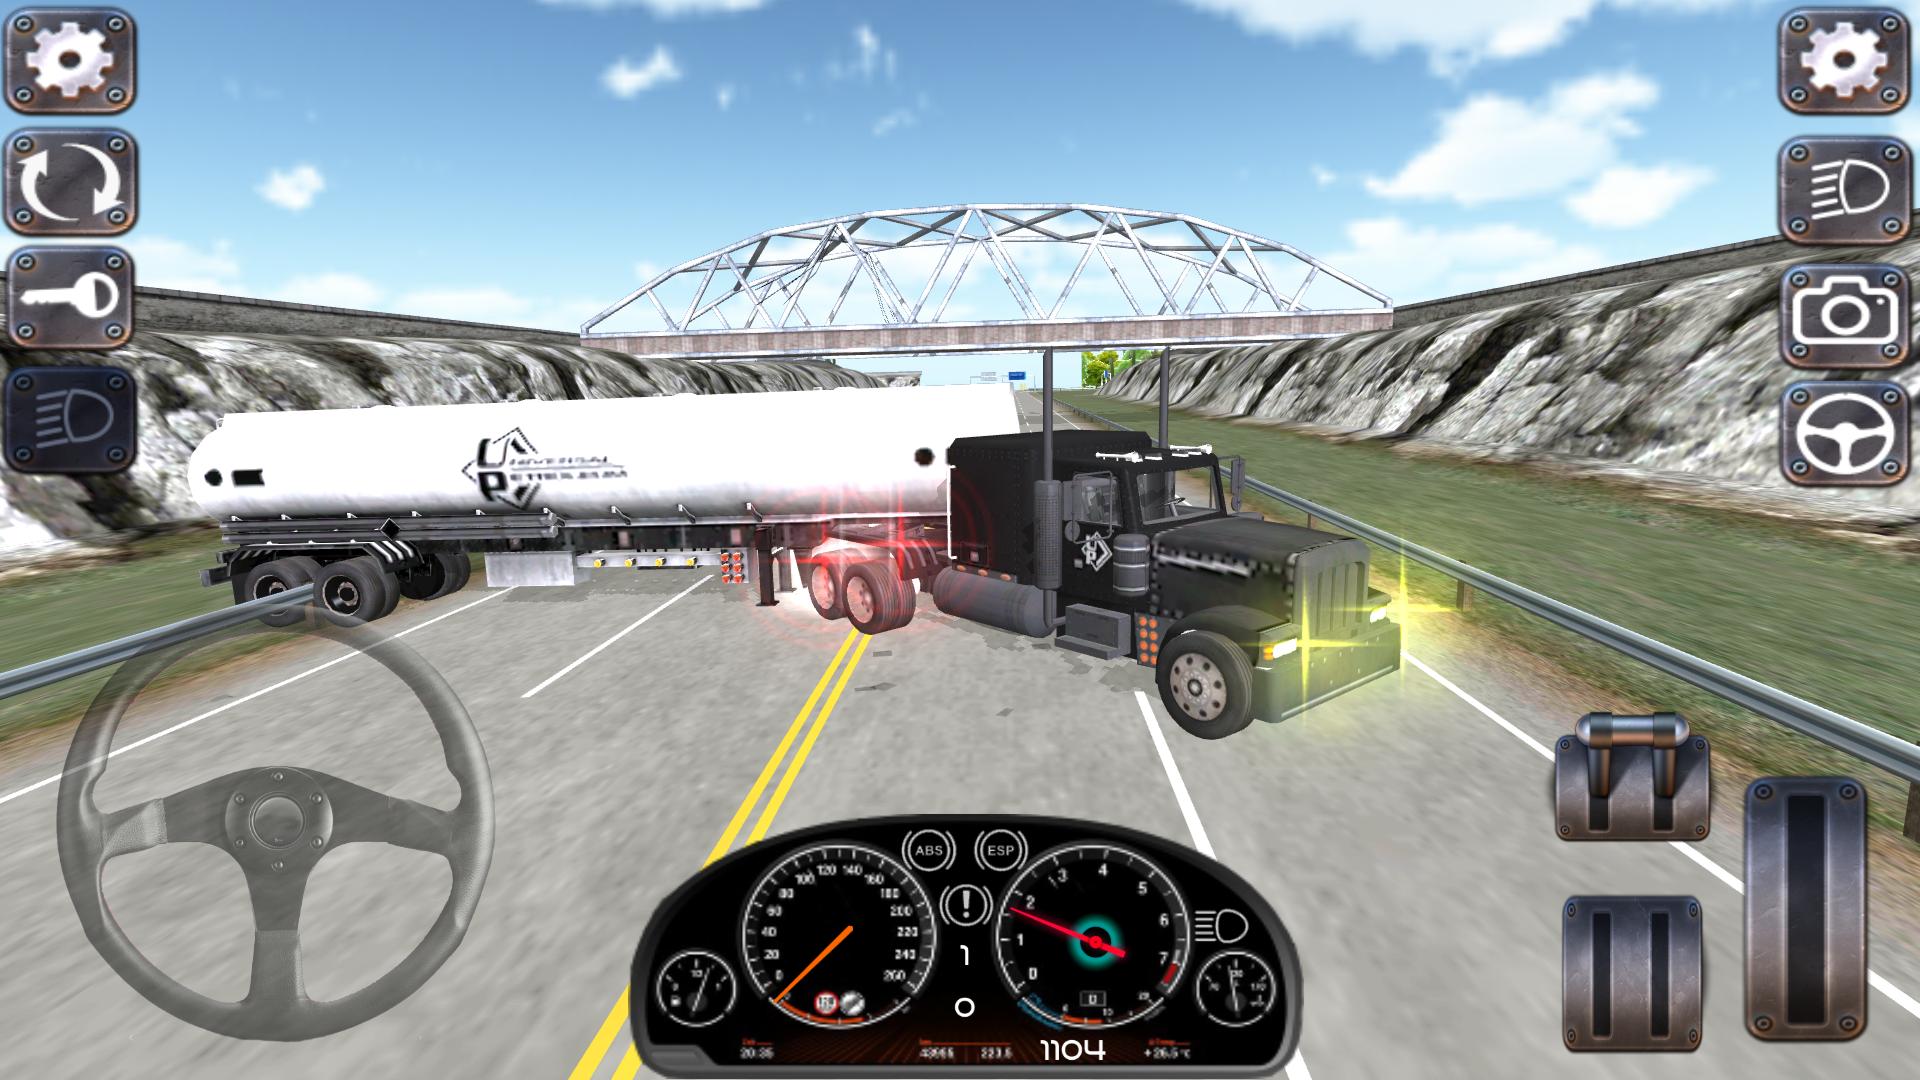 Игры симулятор силы. Евро трак симулятор 3. Симулятор евро трек симулятор 3. Euro Truck Simulator 3 на андроид. Евротрак 3 симулятор андроид.